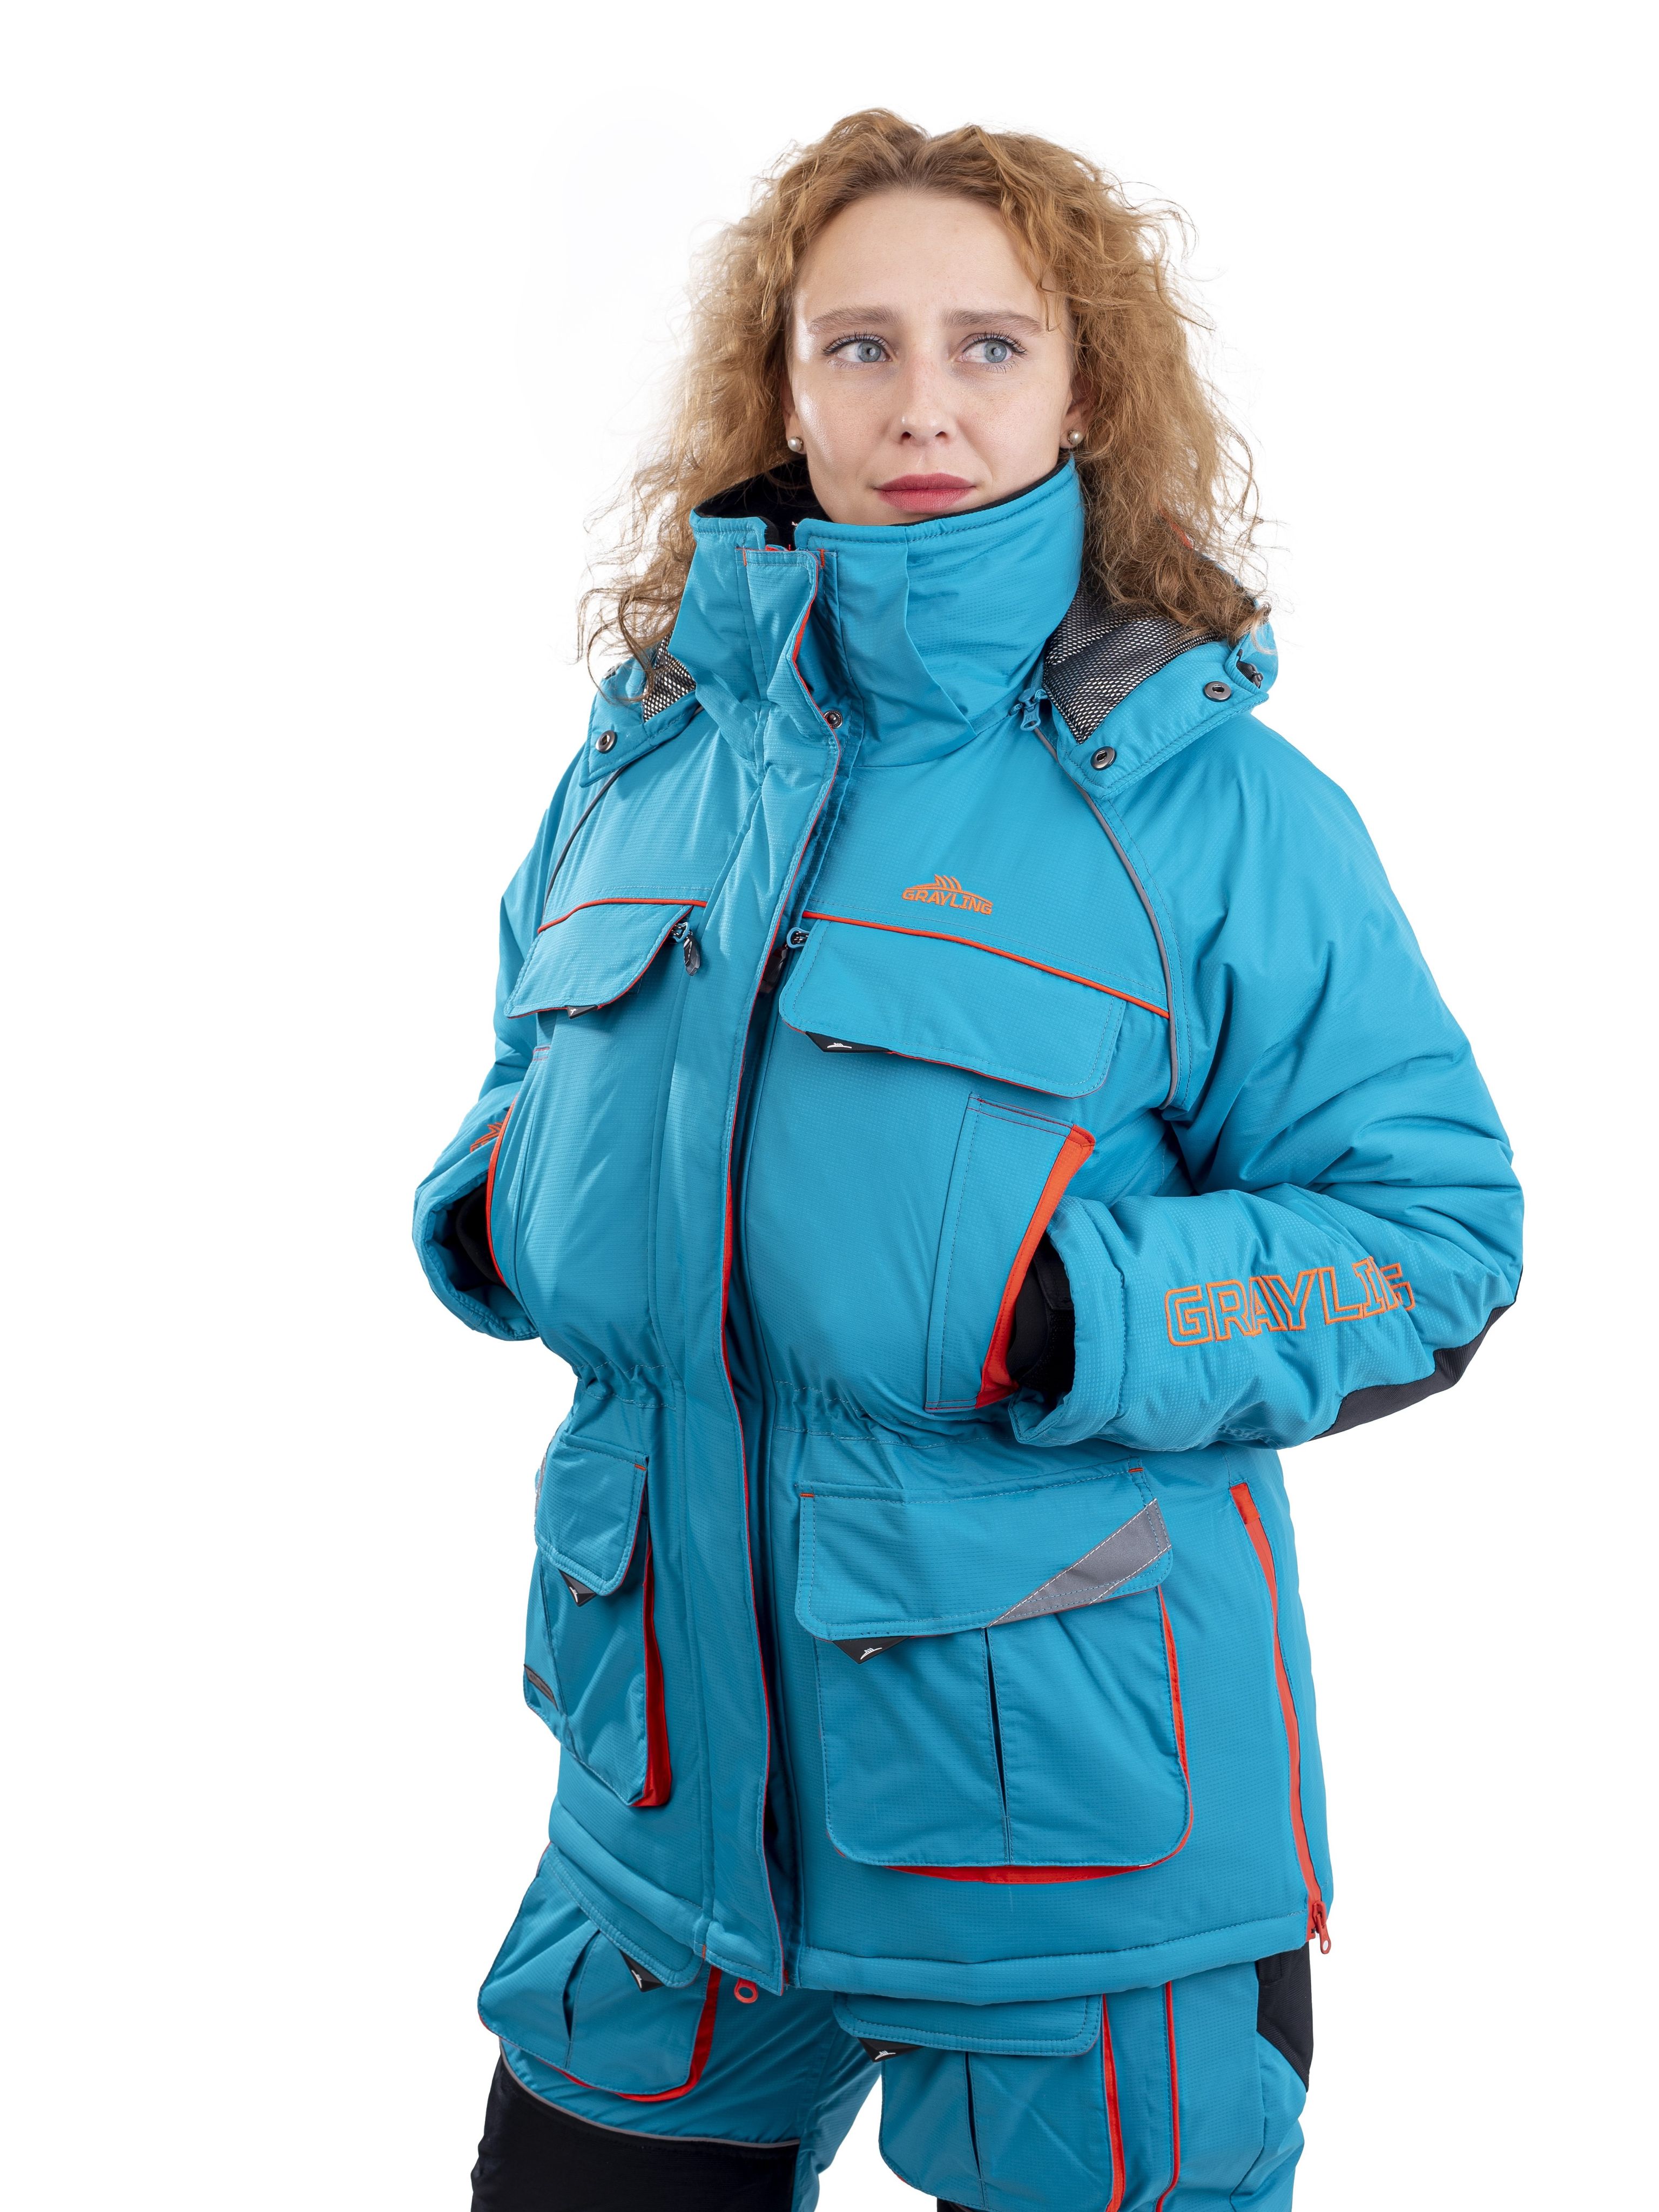 Камчатка женский зимний костюм для рыбалки NOVATEX бирюзовый оранжевый 44 на рост 170 см